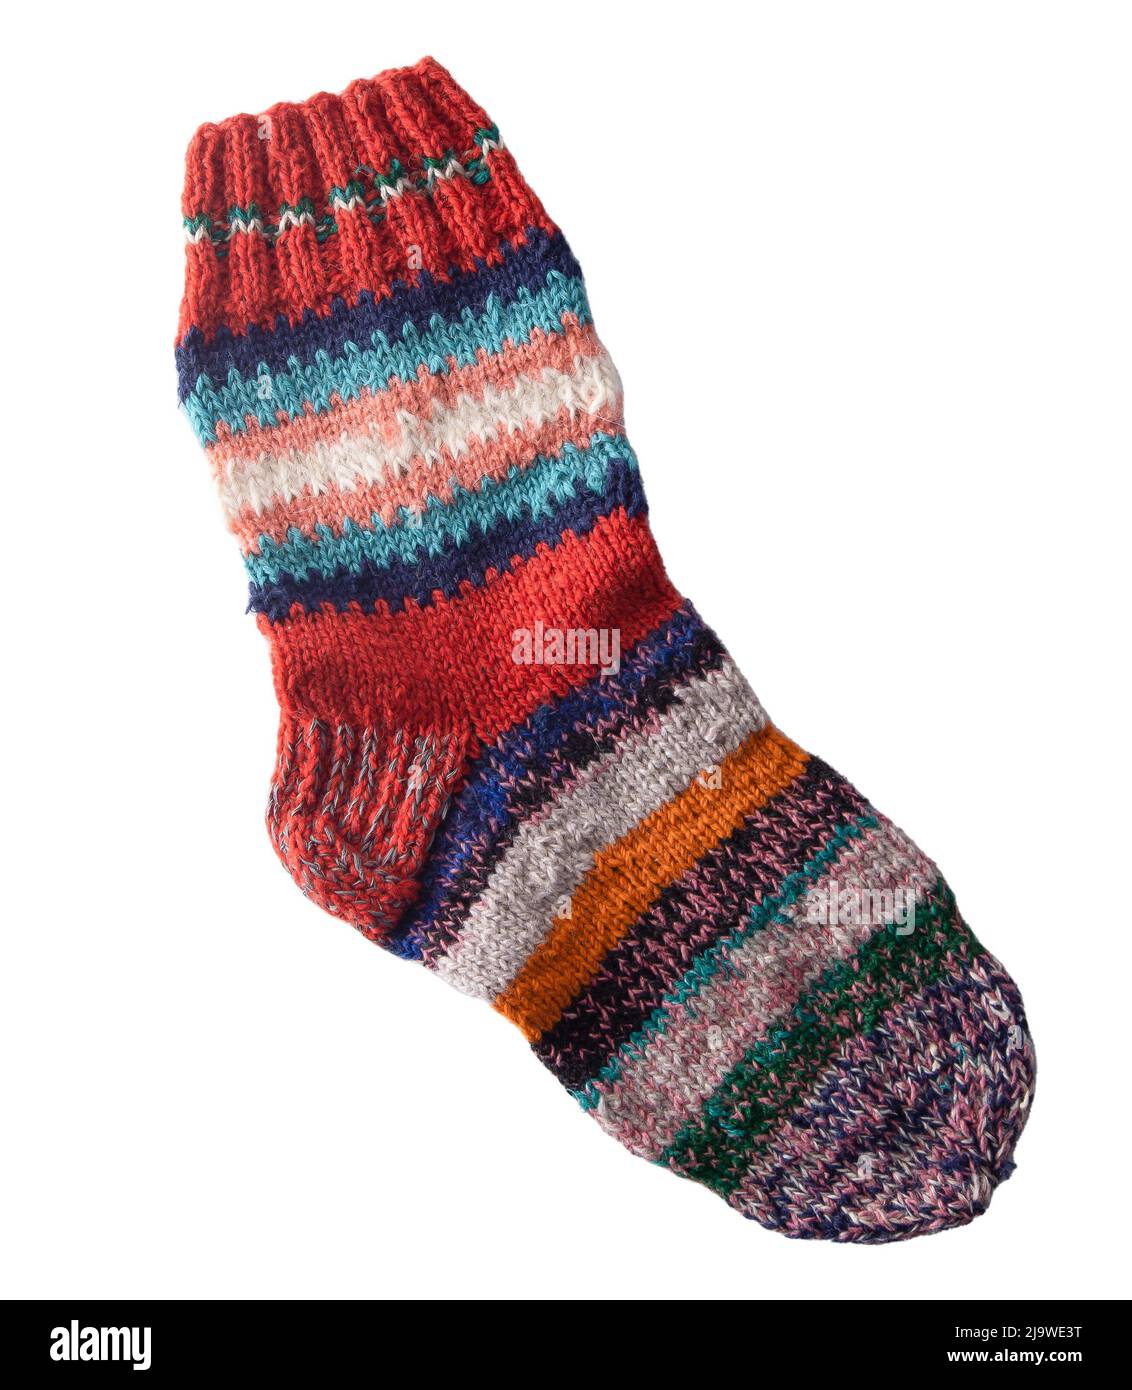 Tricoter les chaussettes à partir de fils de laine. Chaussettes en maille à rayures colorées faites maison, confortables et chaudes. Banque D'Images